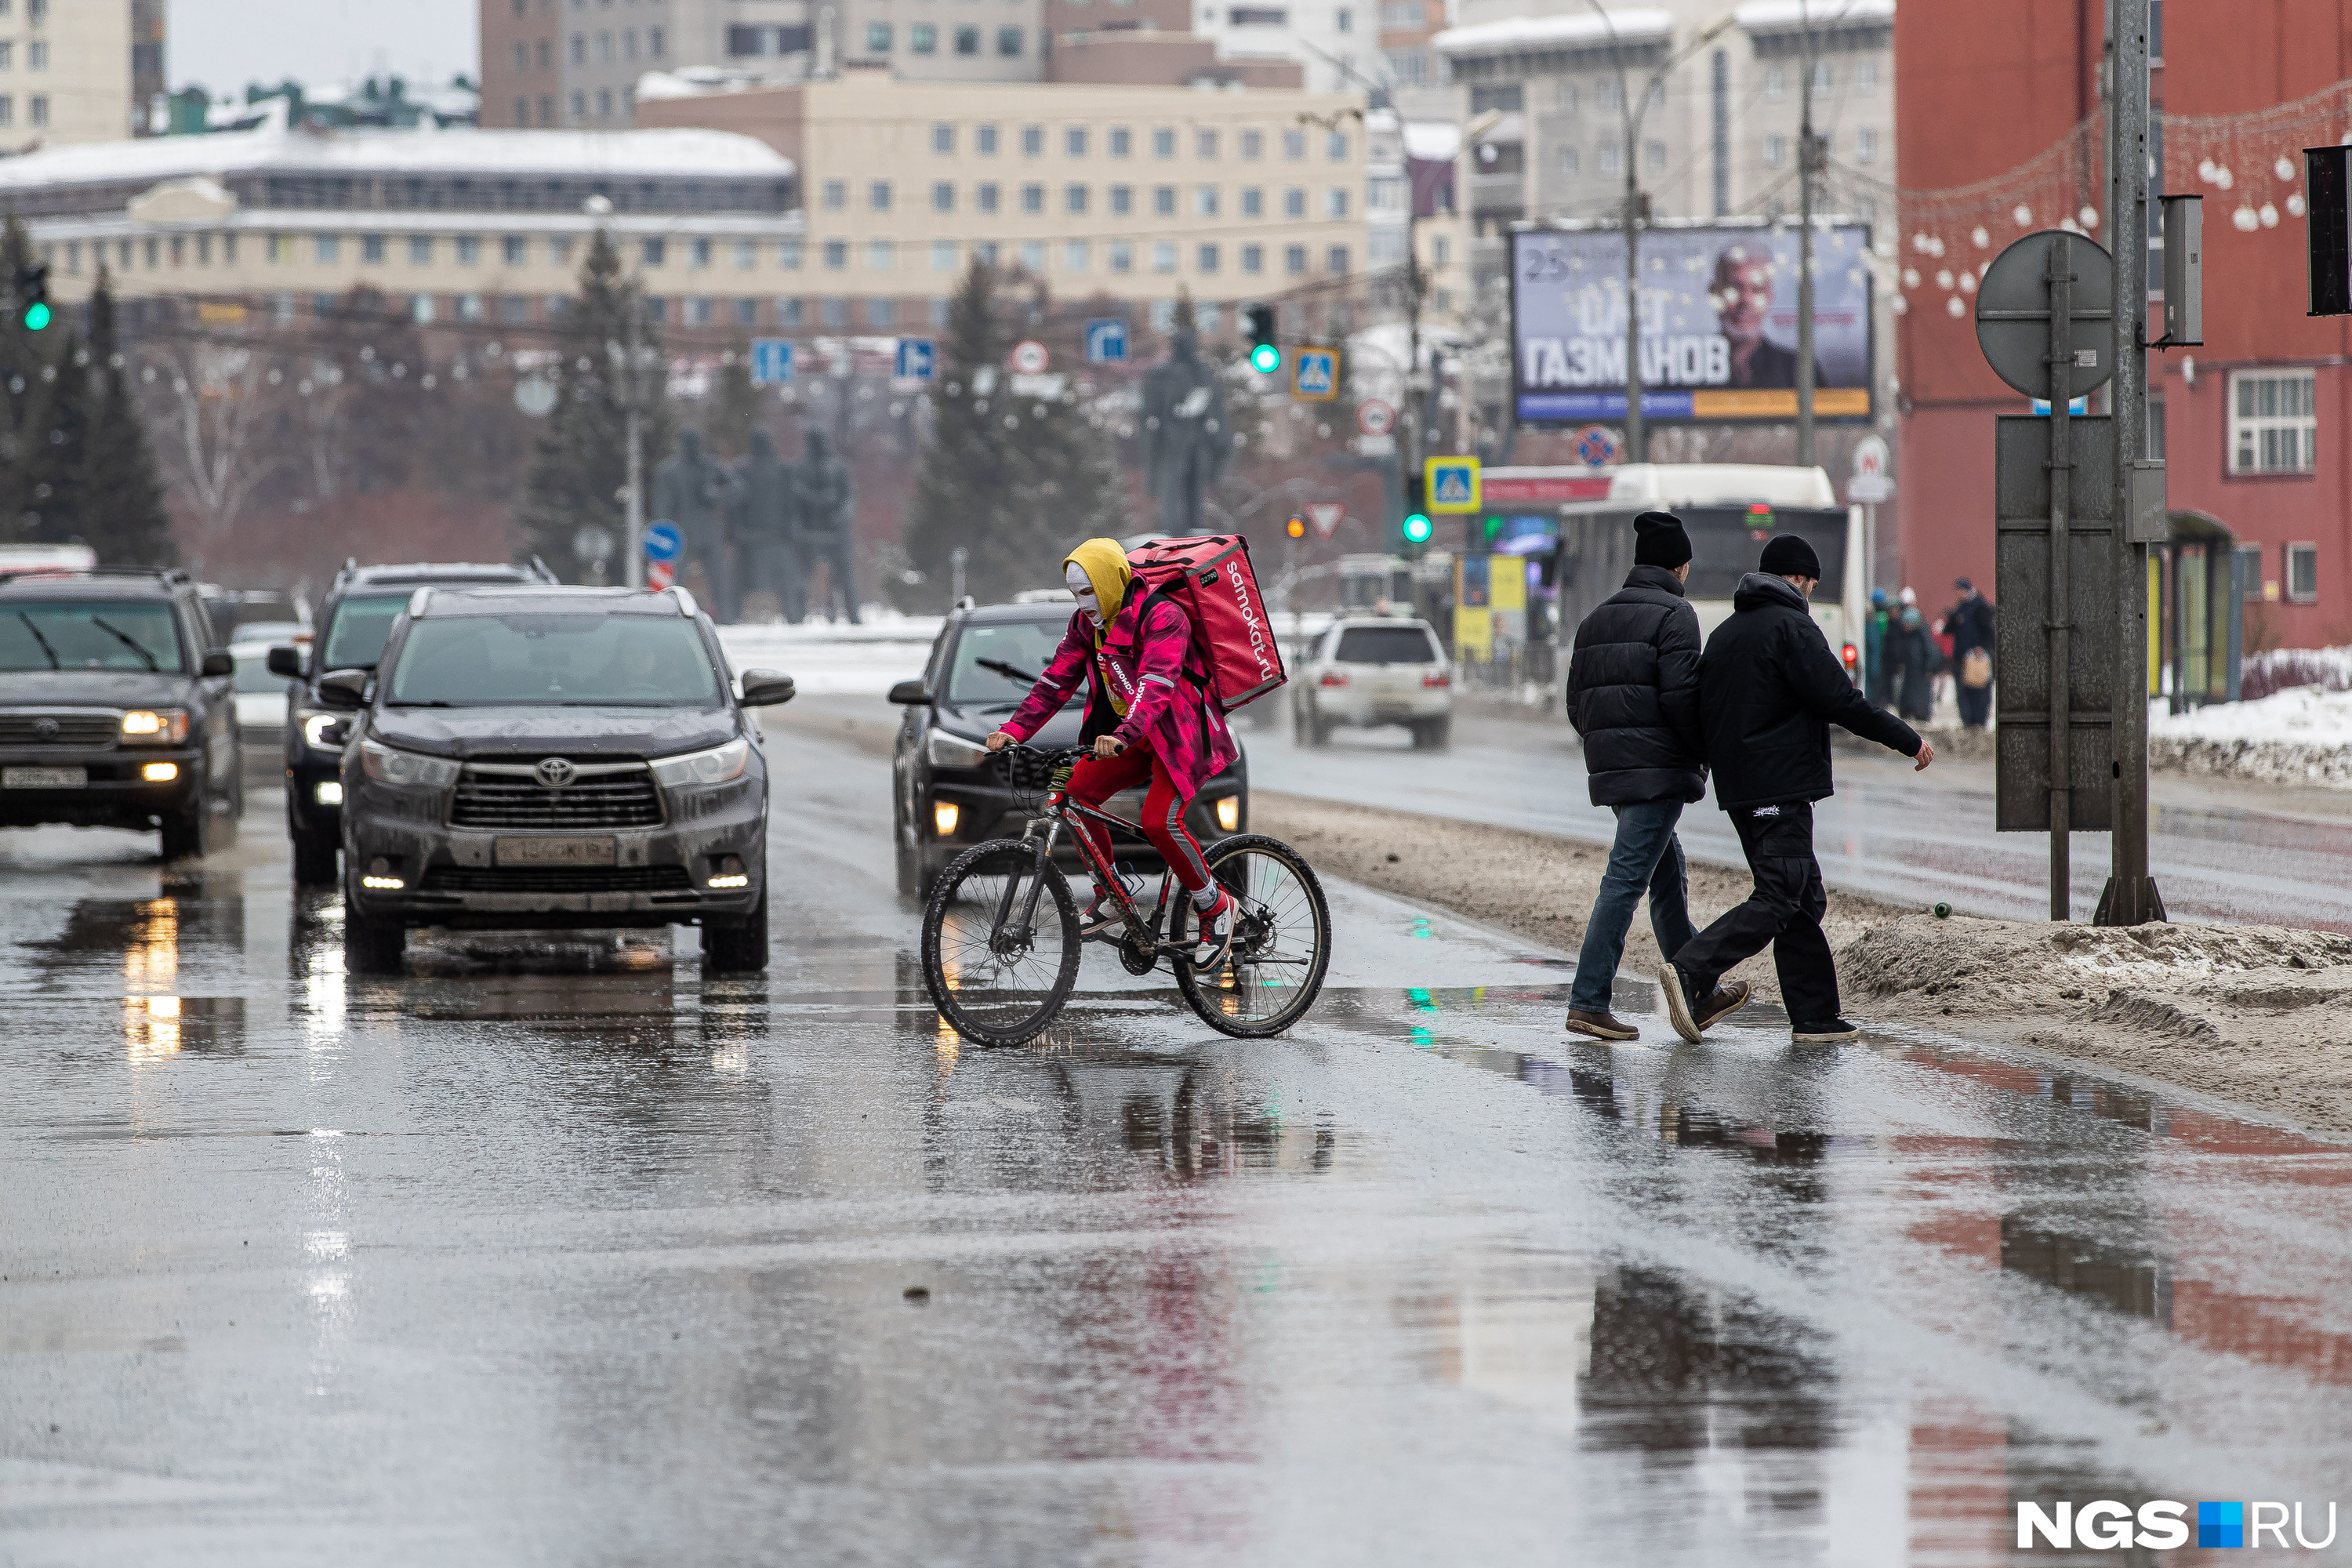 Фотокорреспондент встретил не только пешеходов и водителей, но и велосипедистов